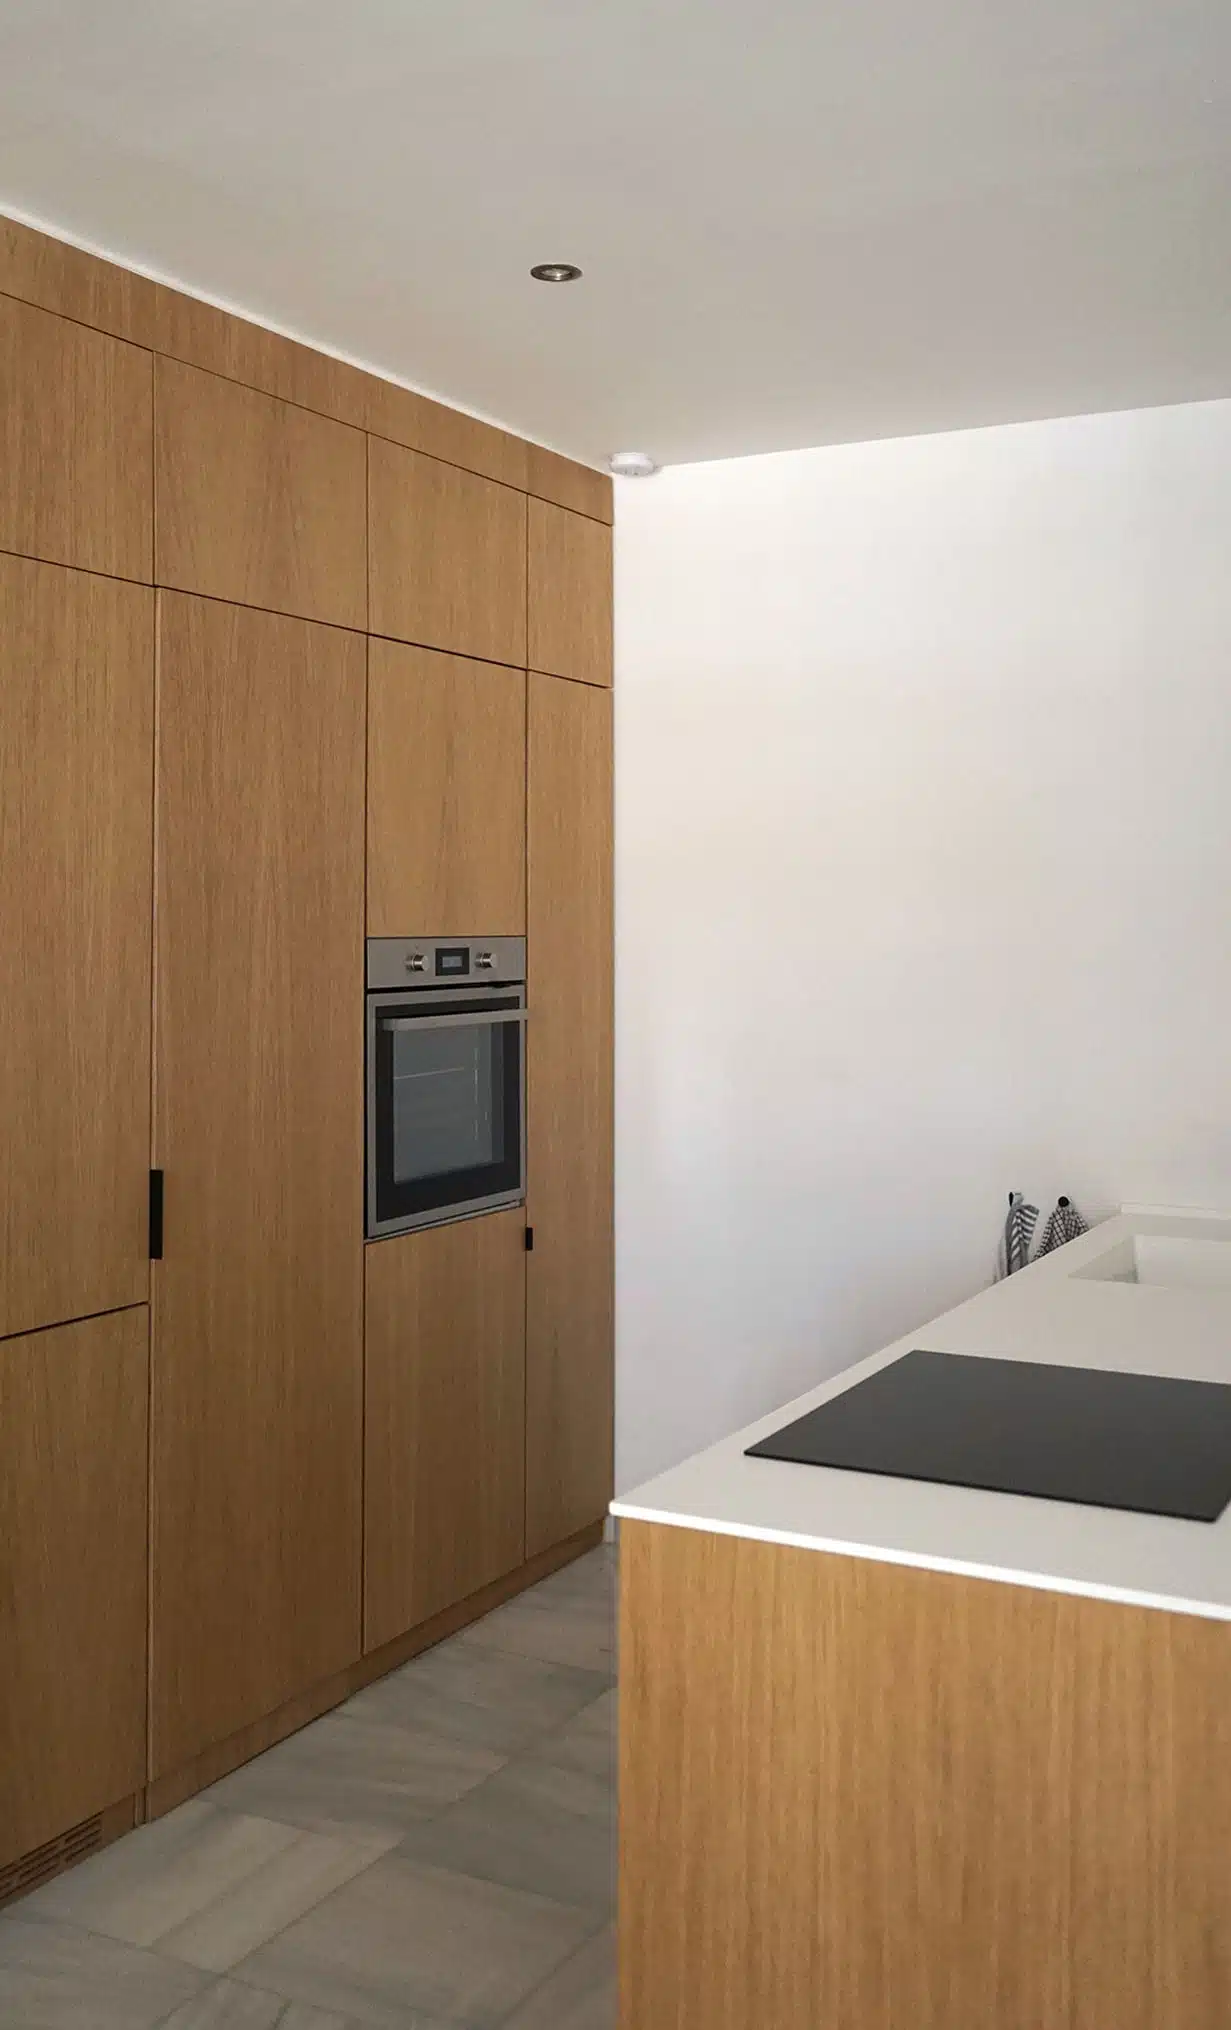 Cocina minimalista de IKEA revestida con paneles CUBRO con acabado en madera de roble natural. Horno y un frigorífico integrado.